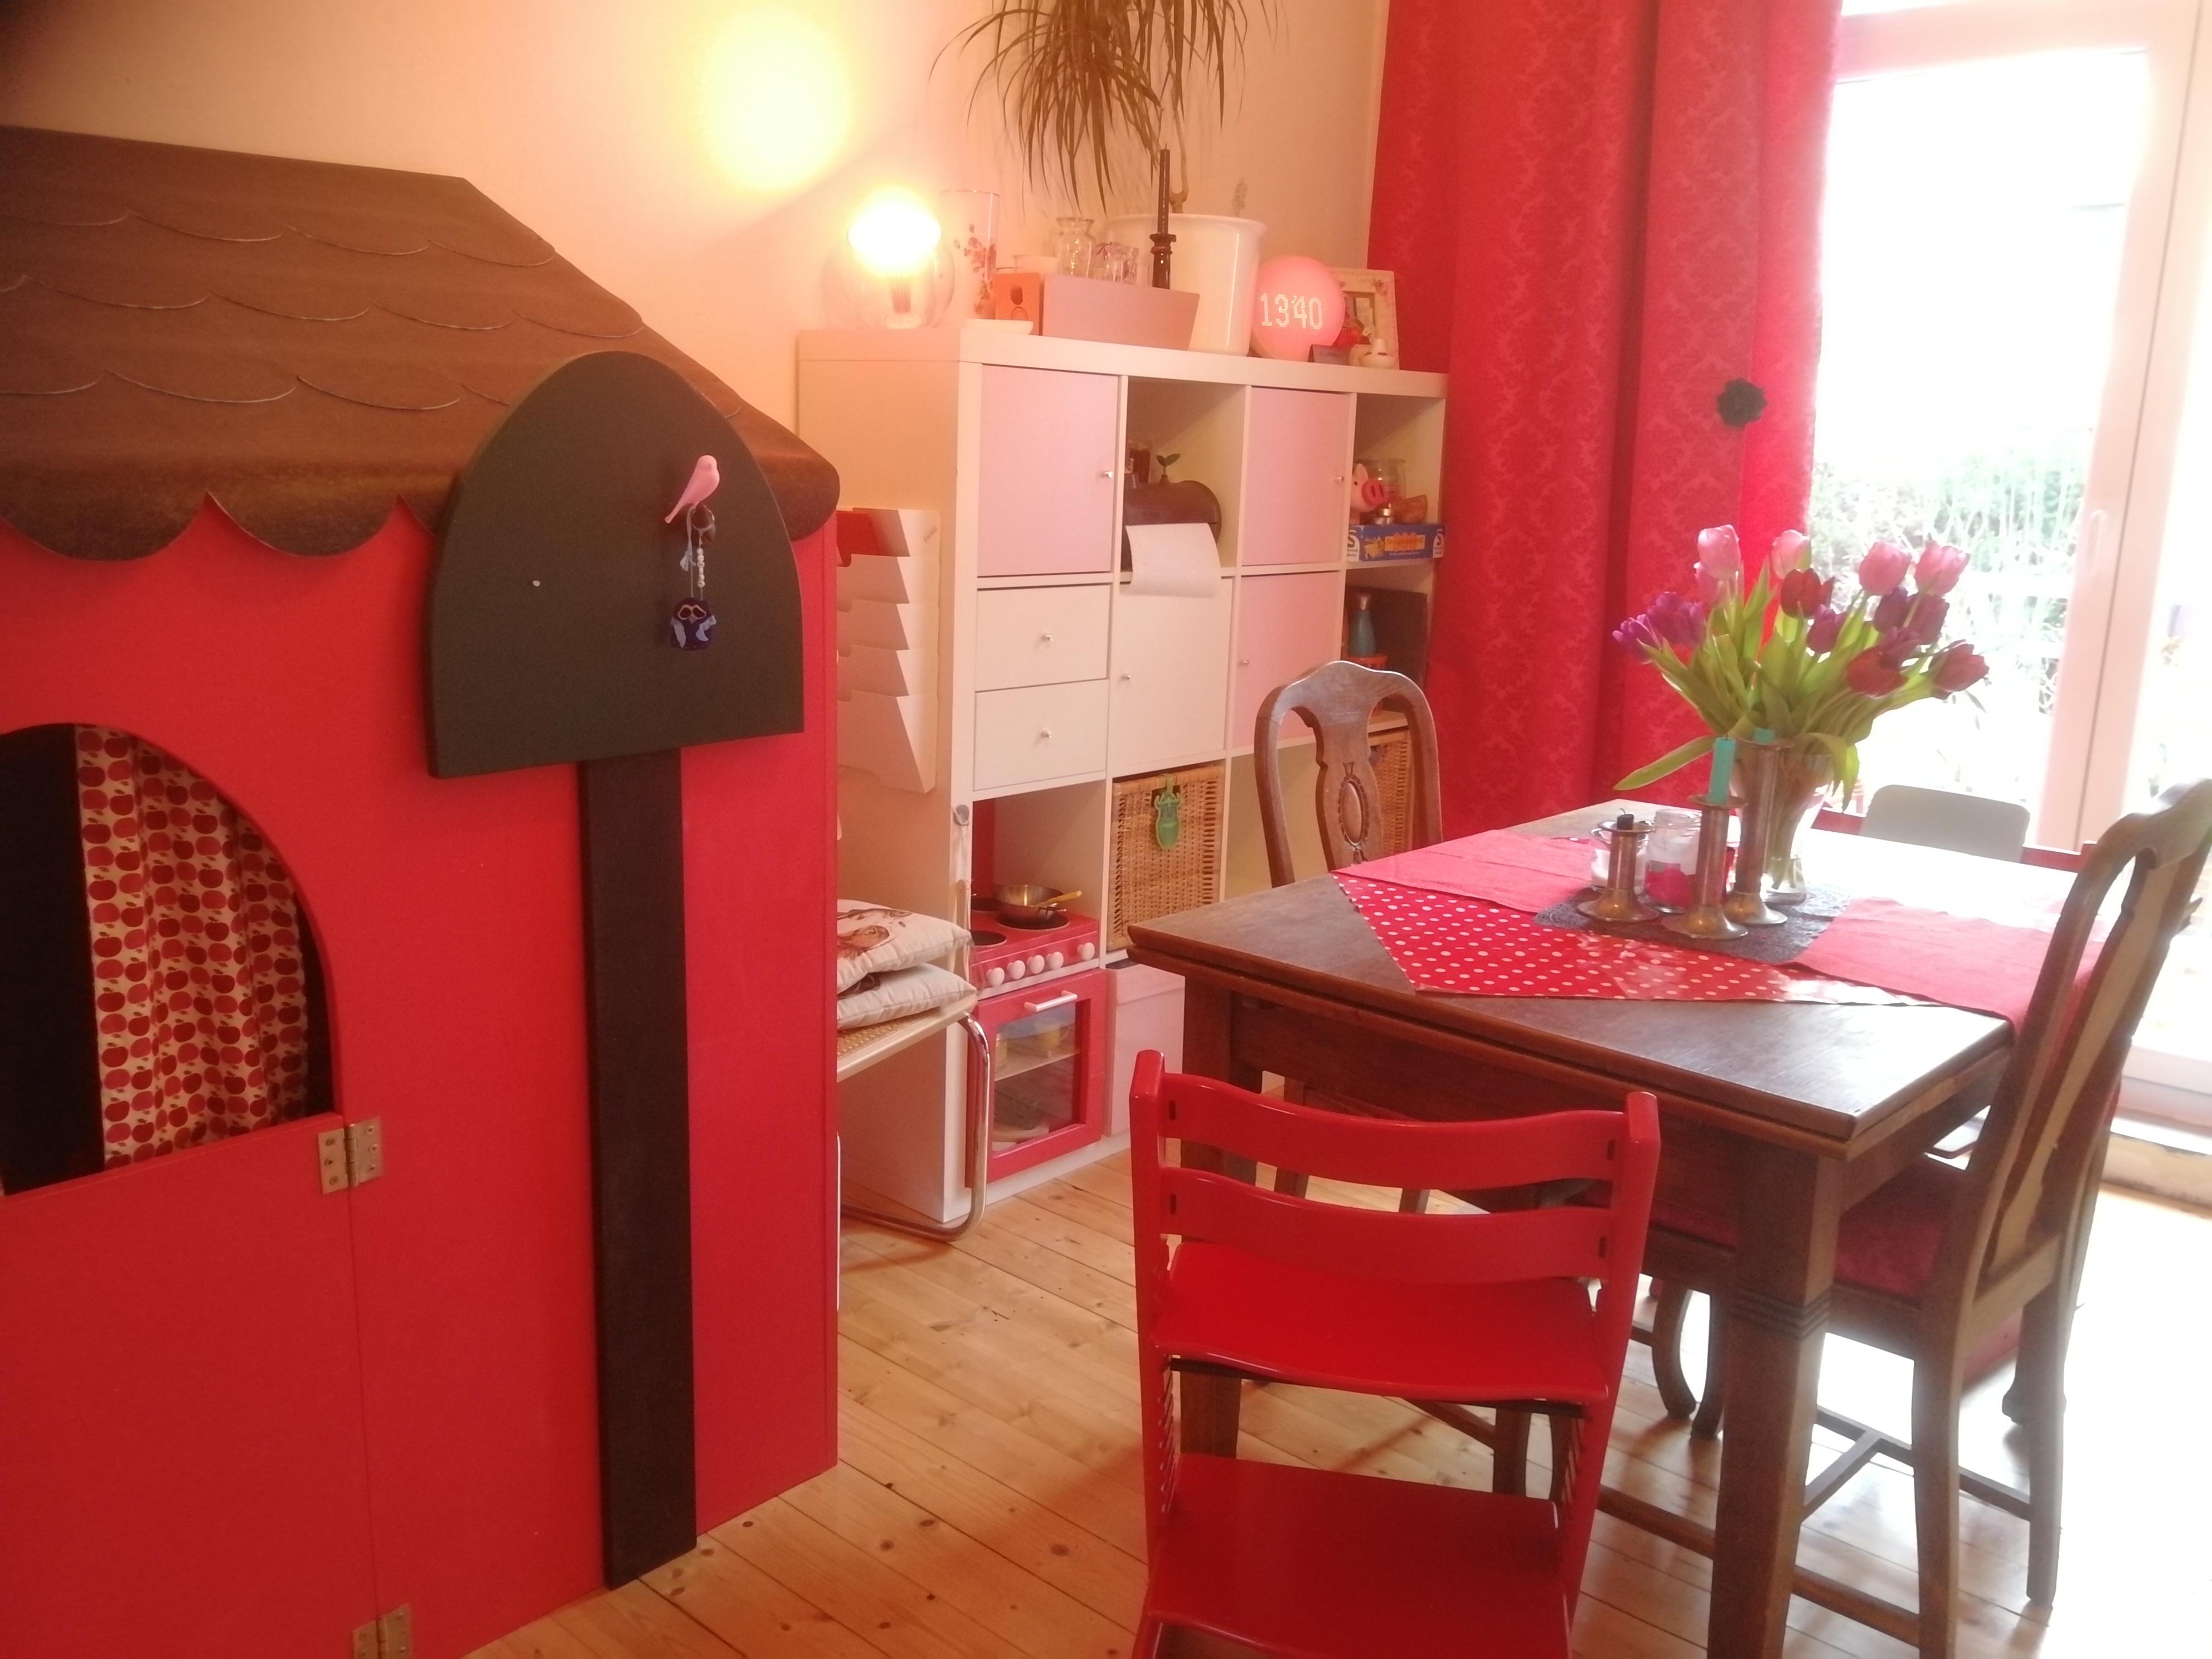 Unser Esszimmer. Und ja, mein Mann fühlt sich wohl, obwohl es rot und pink ist... #esszimmer #livingwithkids #colourful